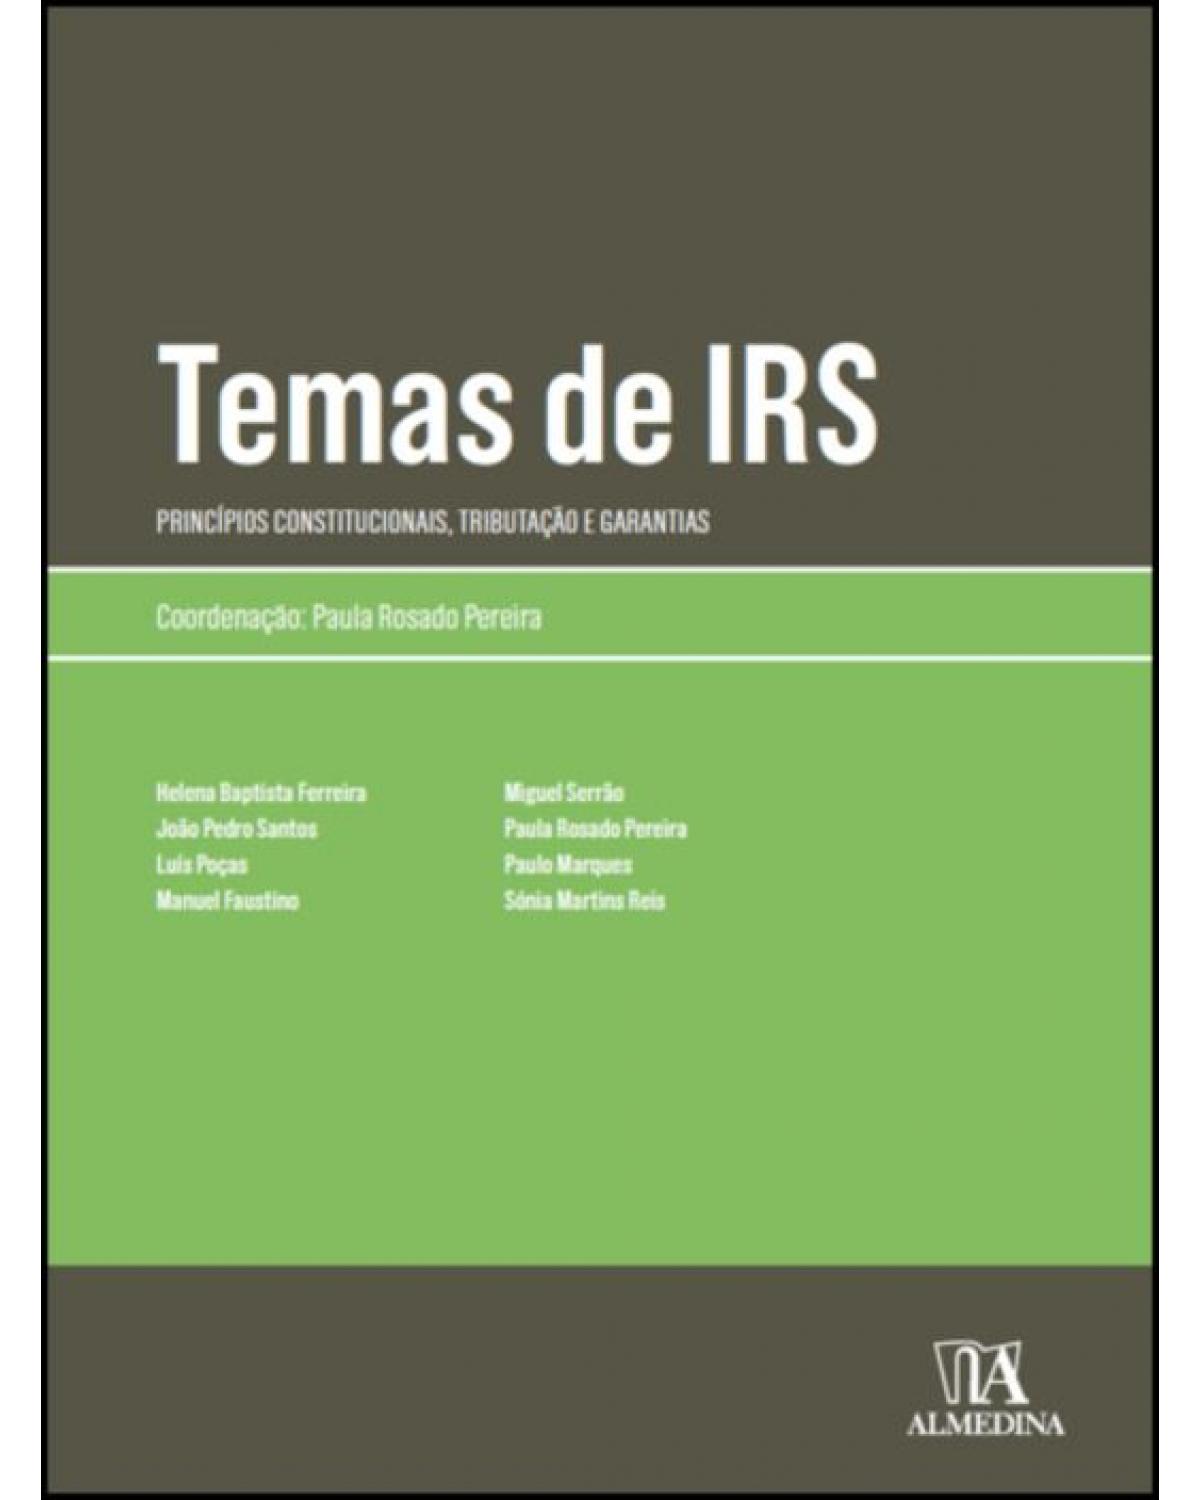 Temas de IRS: Princípios Constitucionais, Tributação e Garantias | 2020